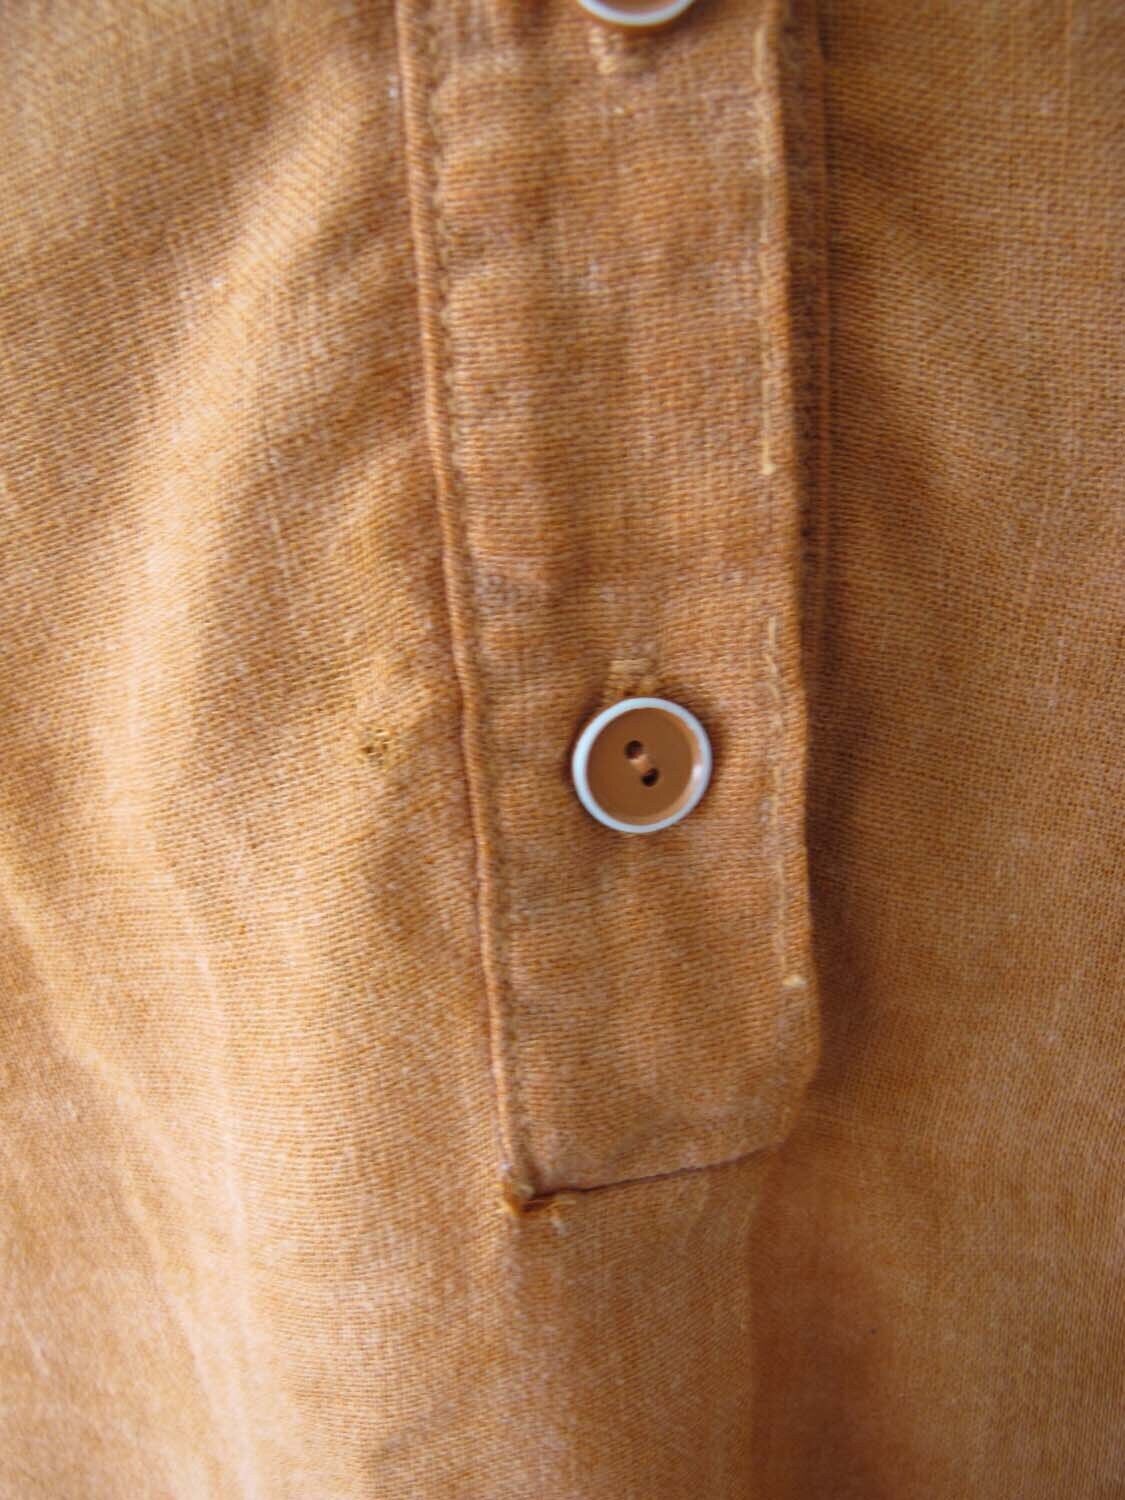 Vintage 70s Gauze Cotton Tunic Top S - 1970s Soft… - image 2